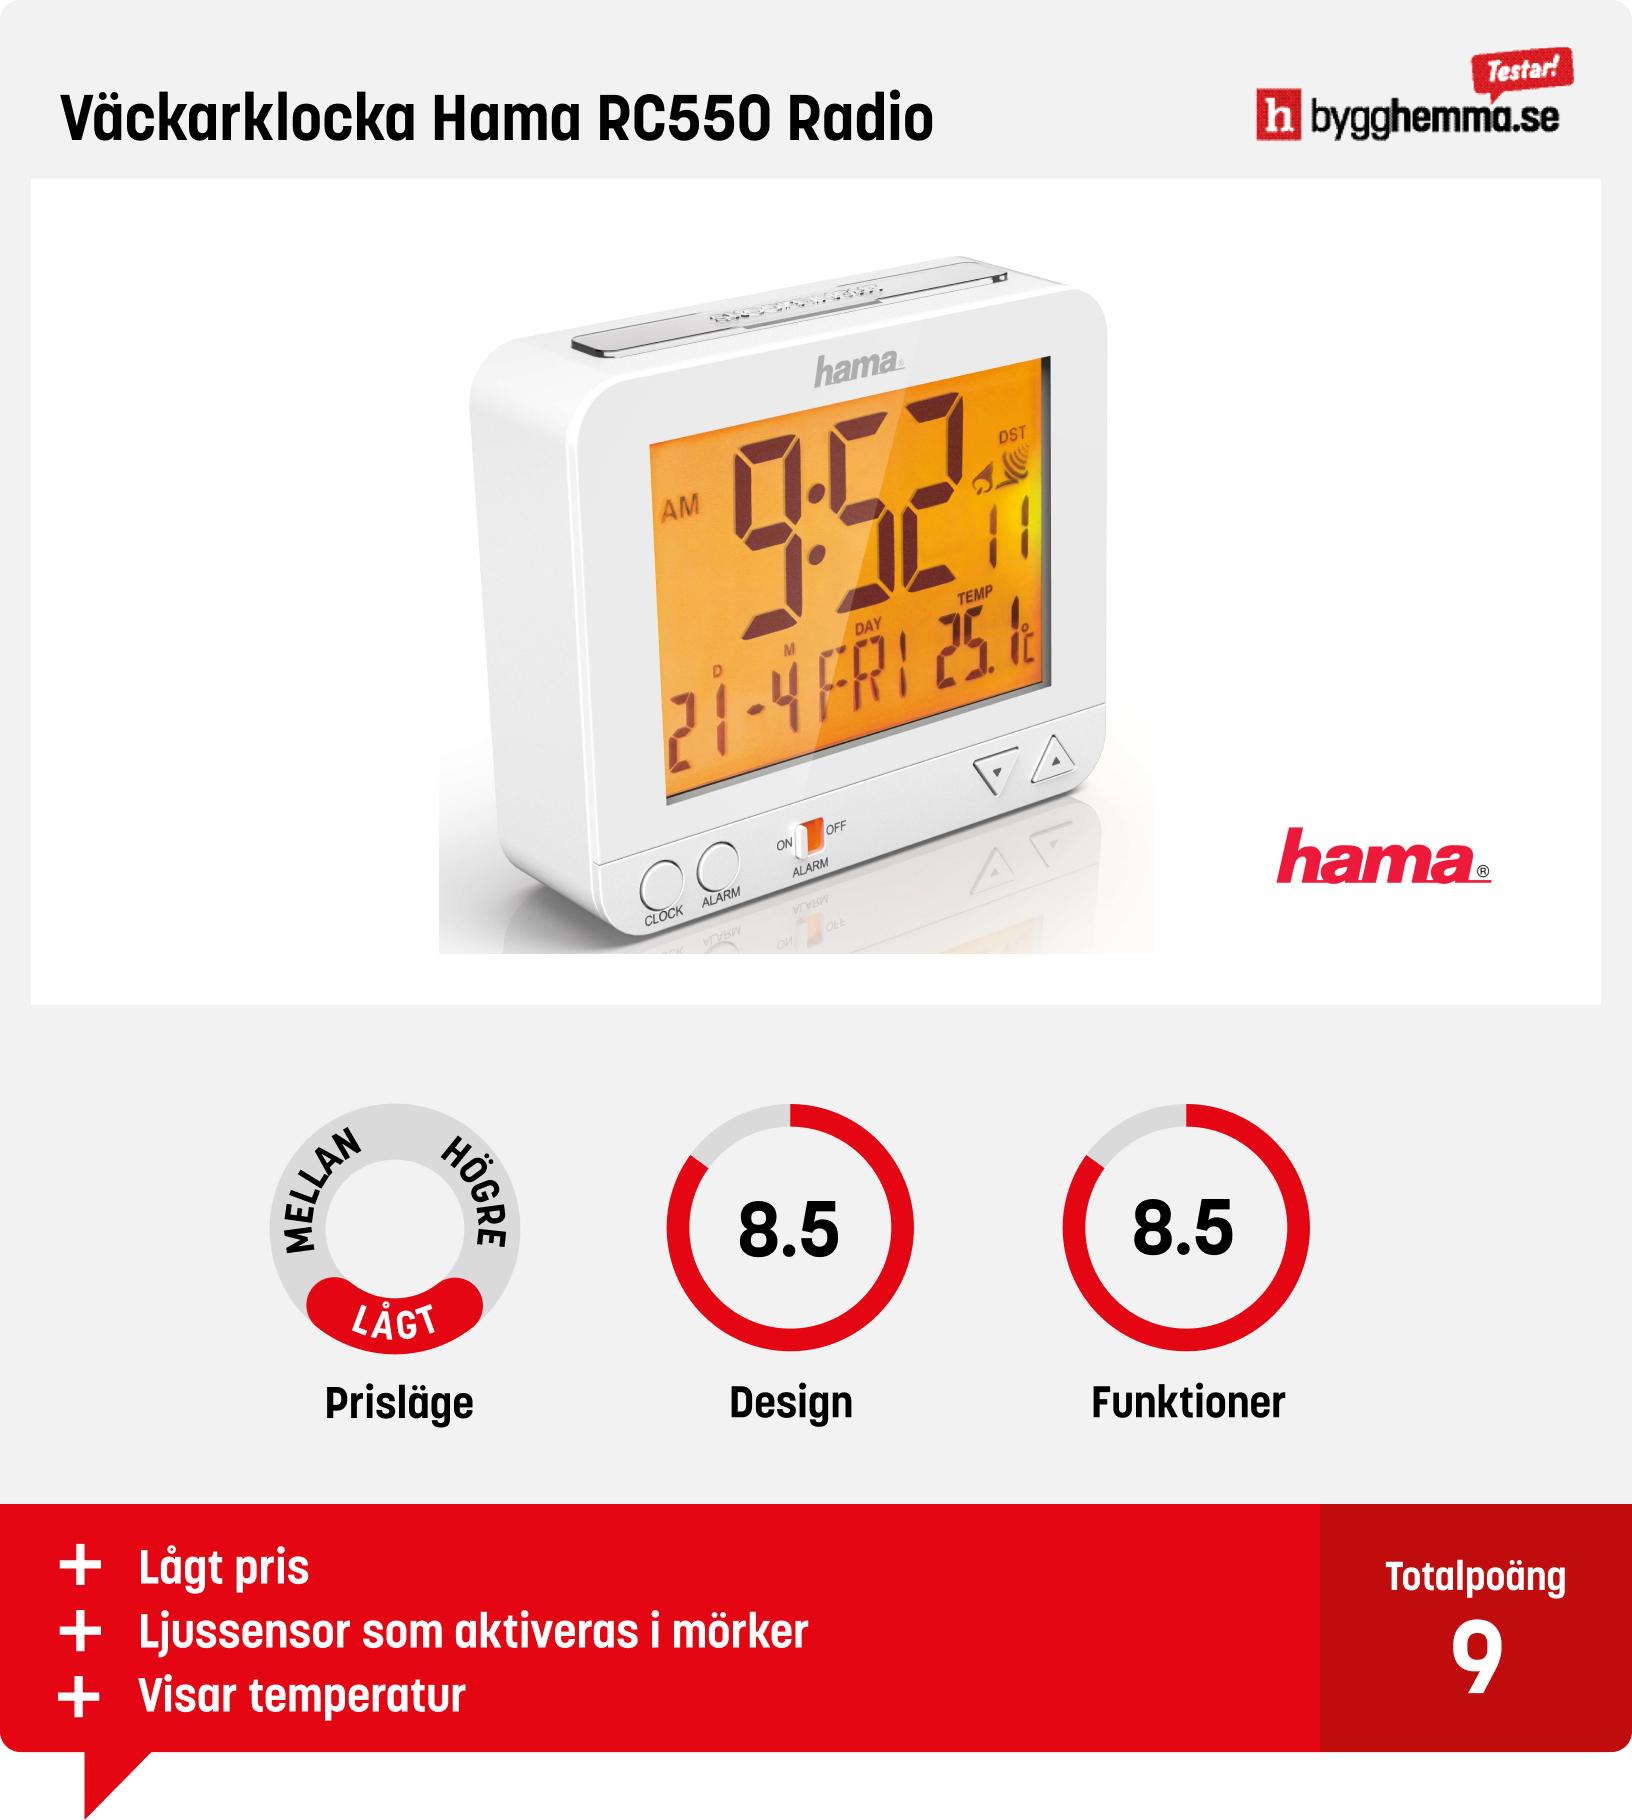 Väckarklocka bäst i test -  Väckarklocka Hama RC550 Radio